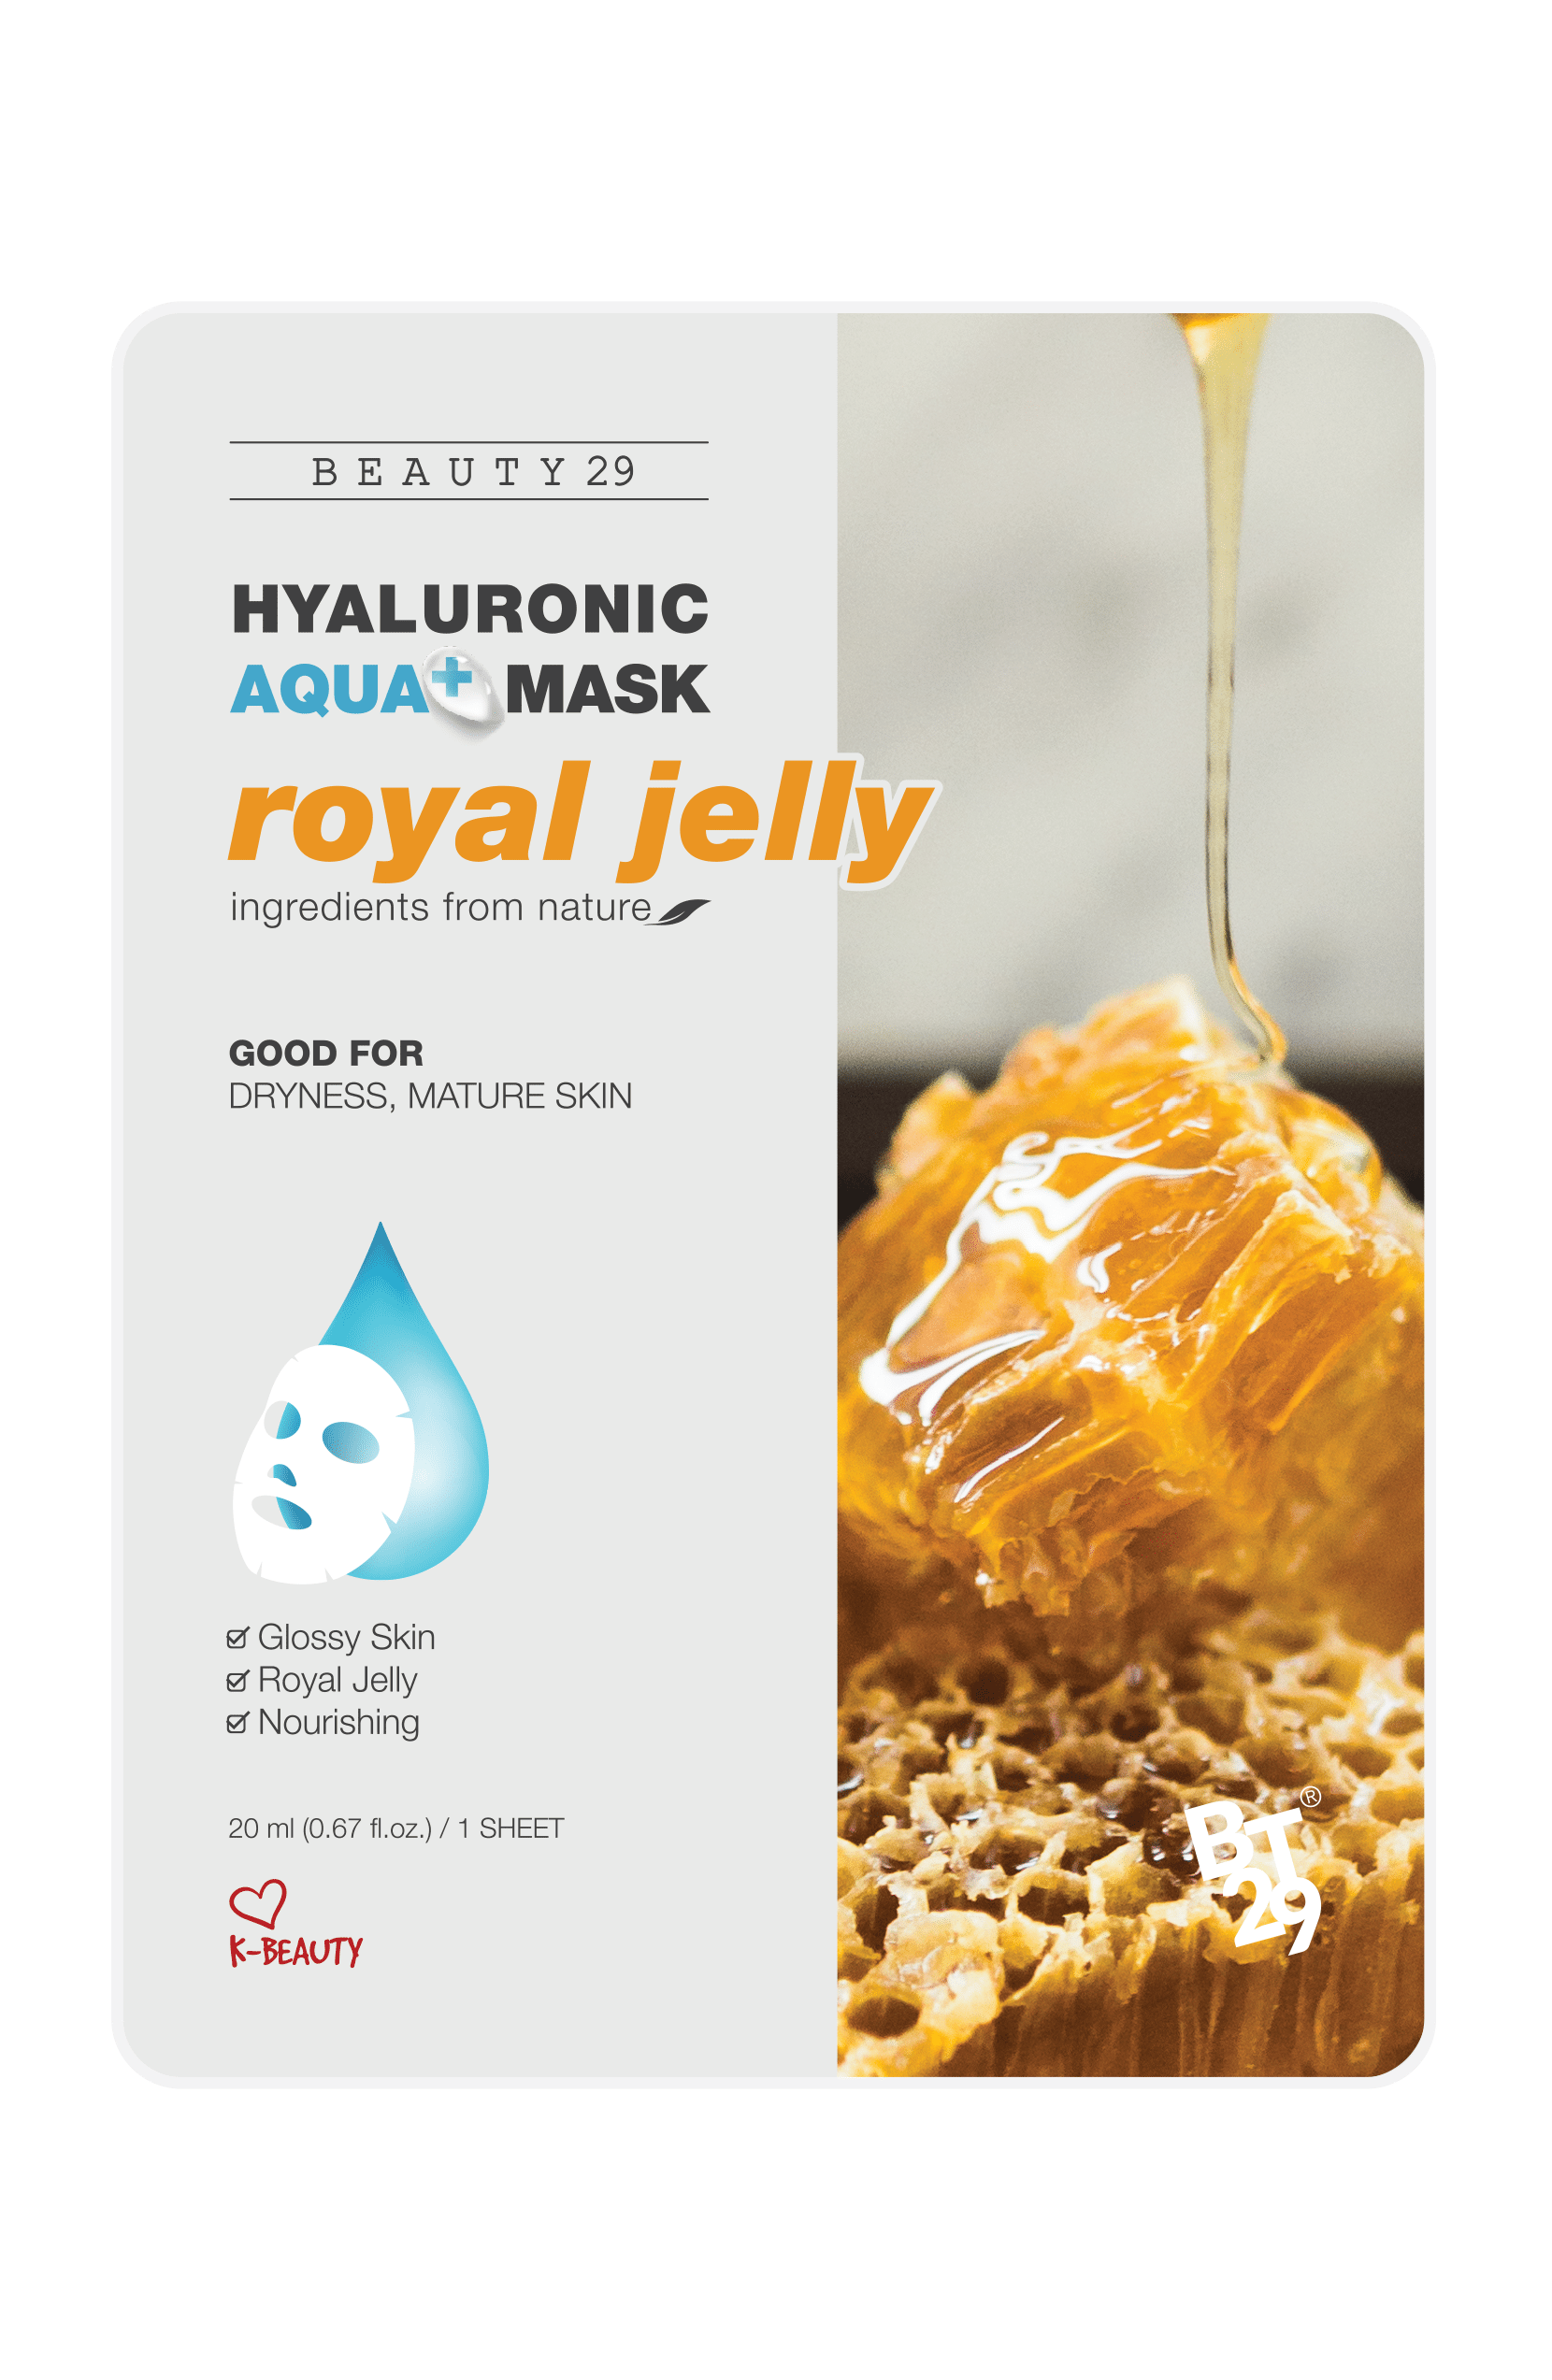 BEAUTY29 Hyaluronic Aqua+ Mask - eCosmeticWorld